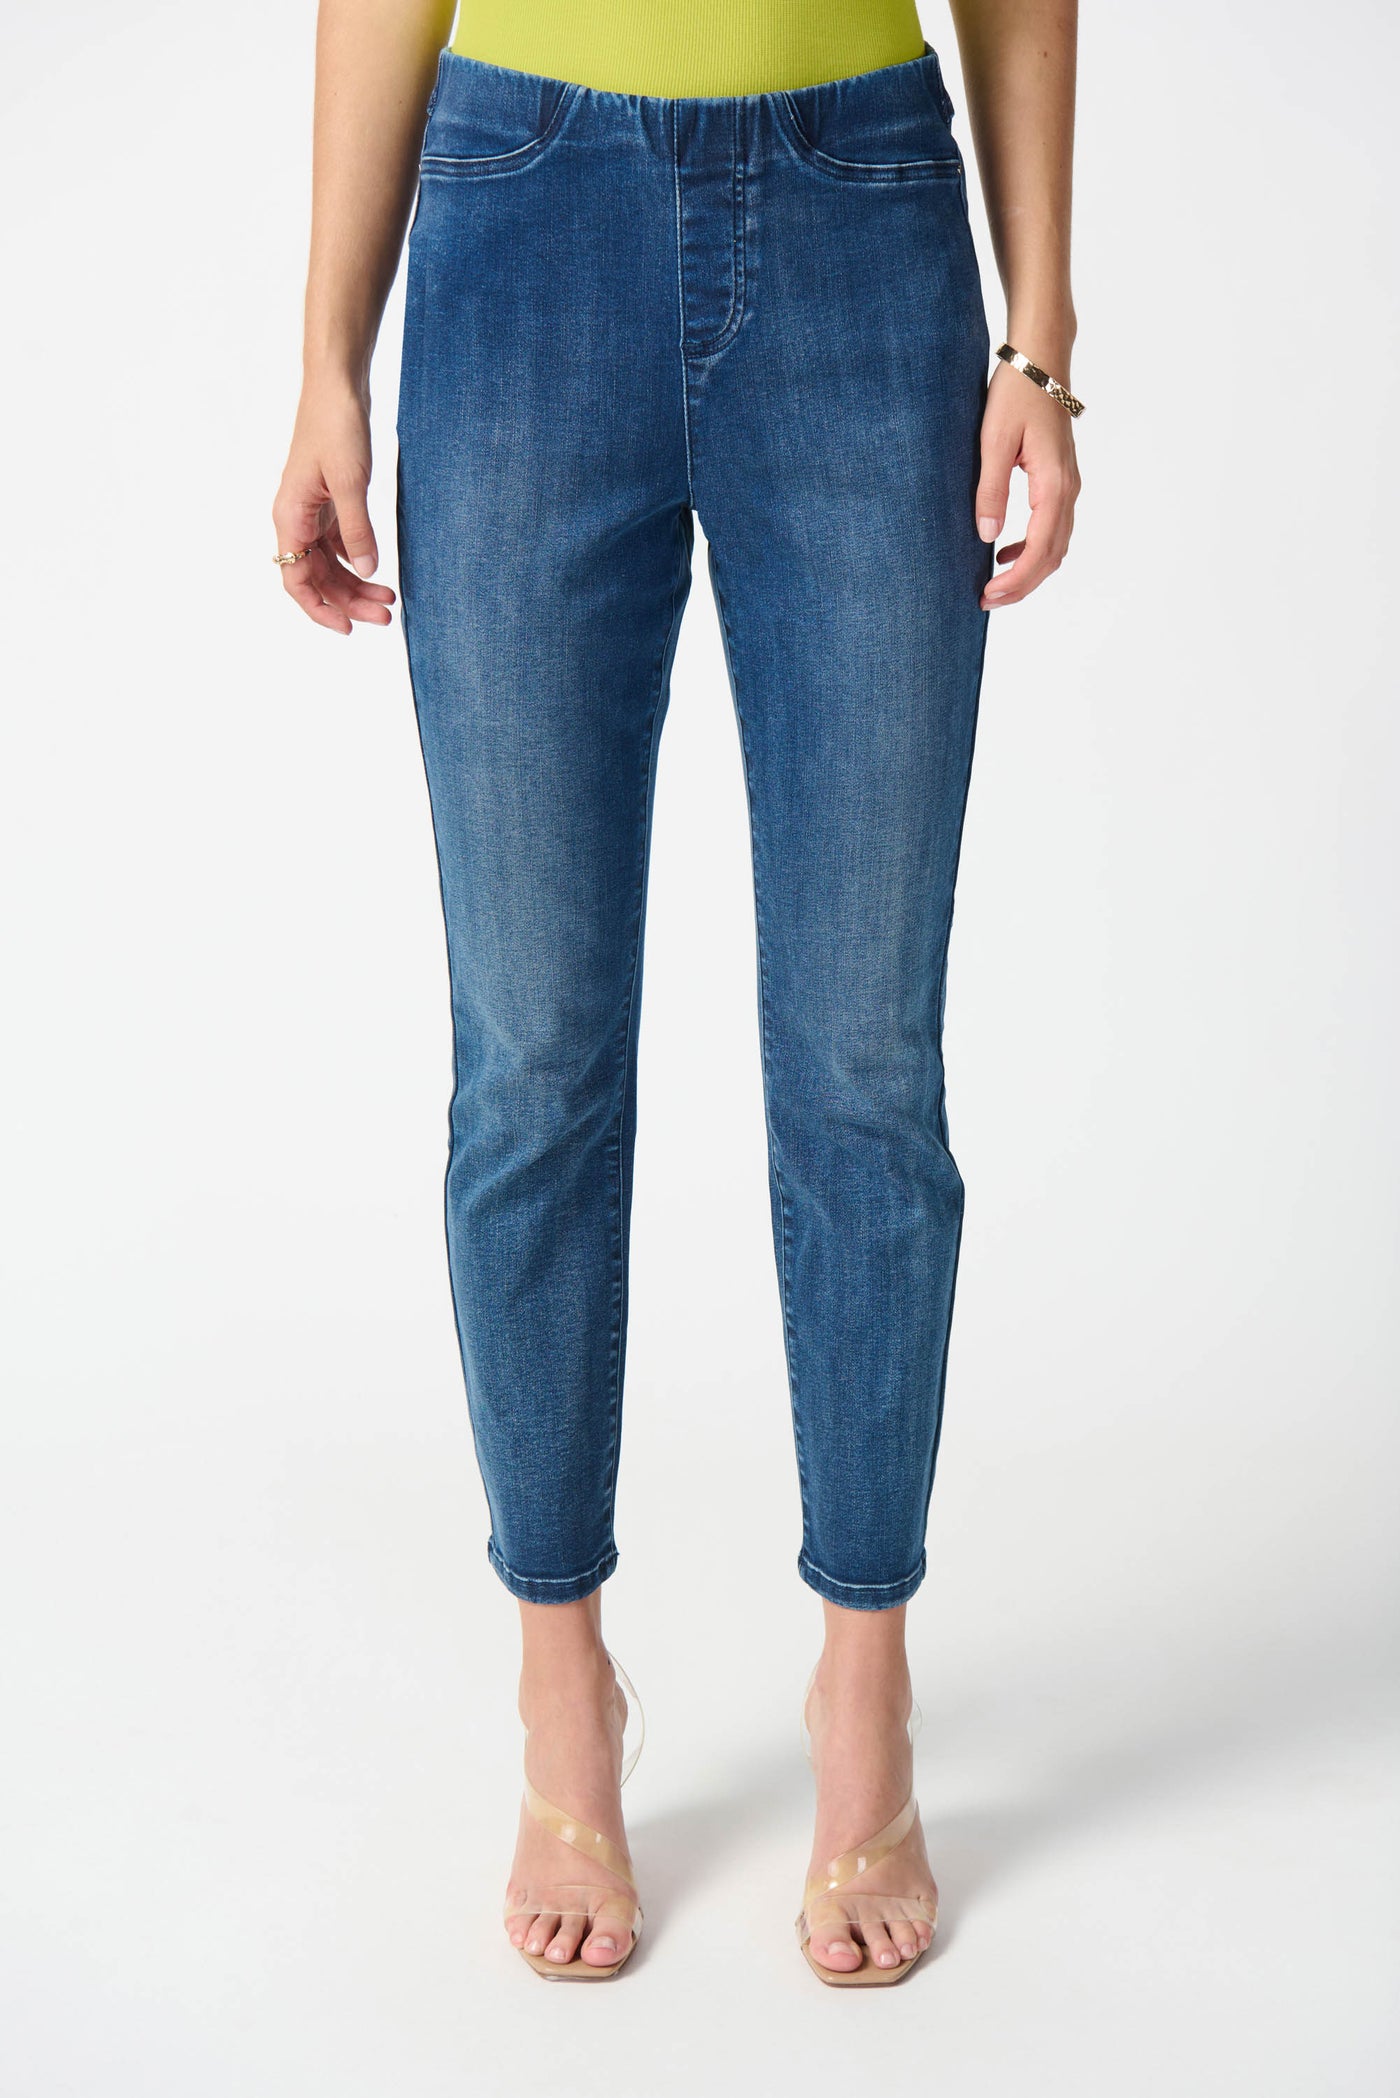 Joseph Ribkoff Denim Slim Fit Pull-On Jeans 